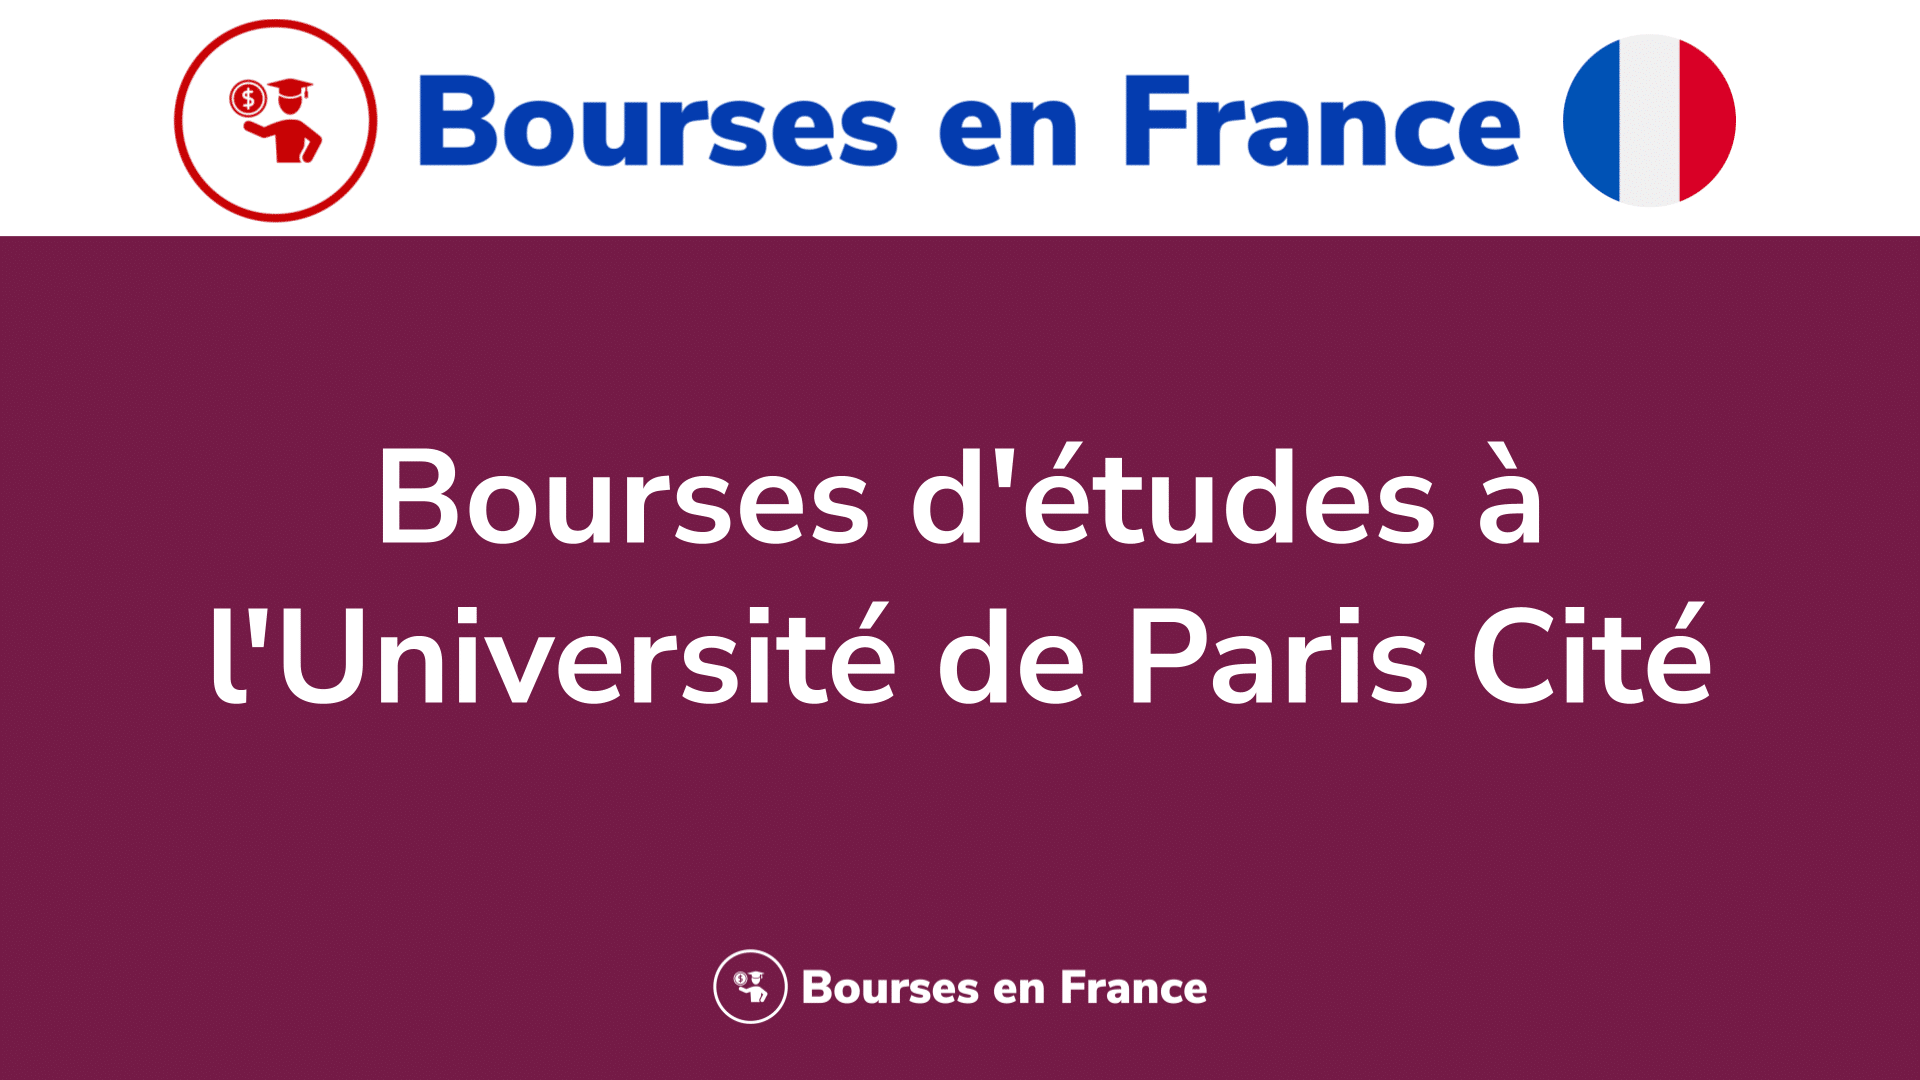 Bourses d'études à l'Université de Paris Cité